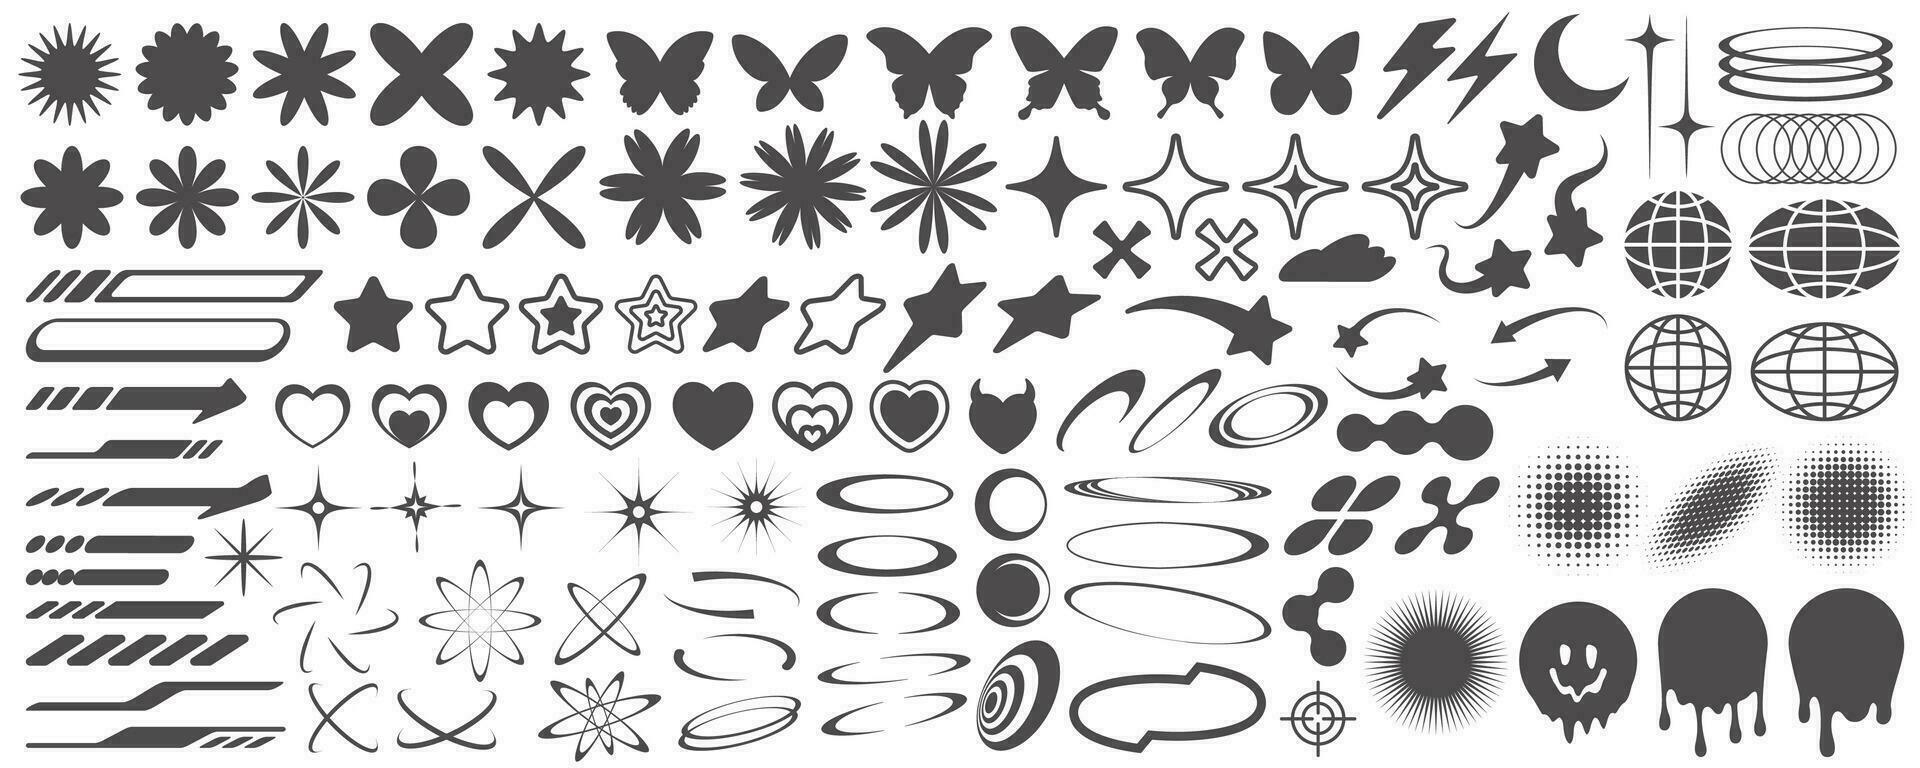 y2k iconos retro gráfico elementos para diseño. moderno delirio simbolos resumen geométrico estrellas destellos y futurista formas vector conjunto de corazones, flores y planetas pegatinas